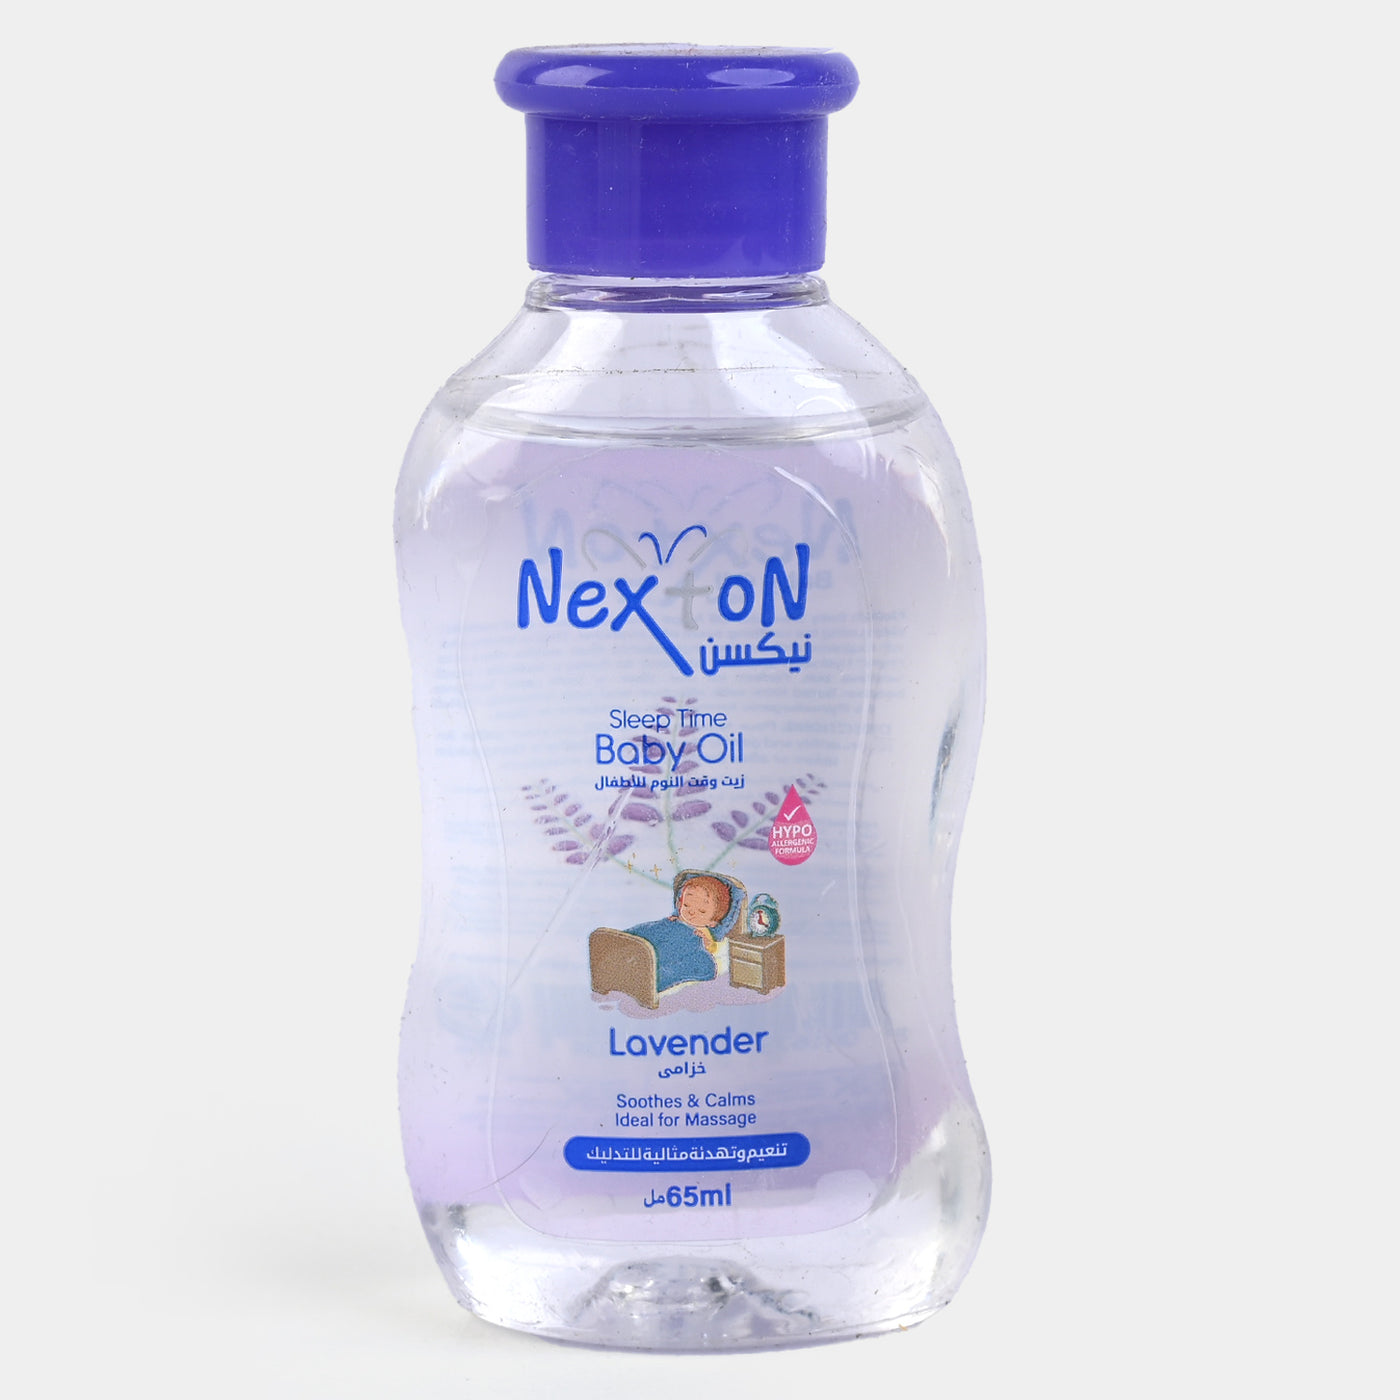 Nexton Baby Oil 65ml (Lavendor)